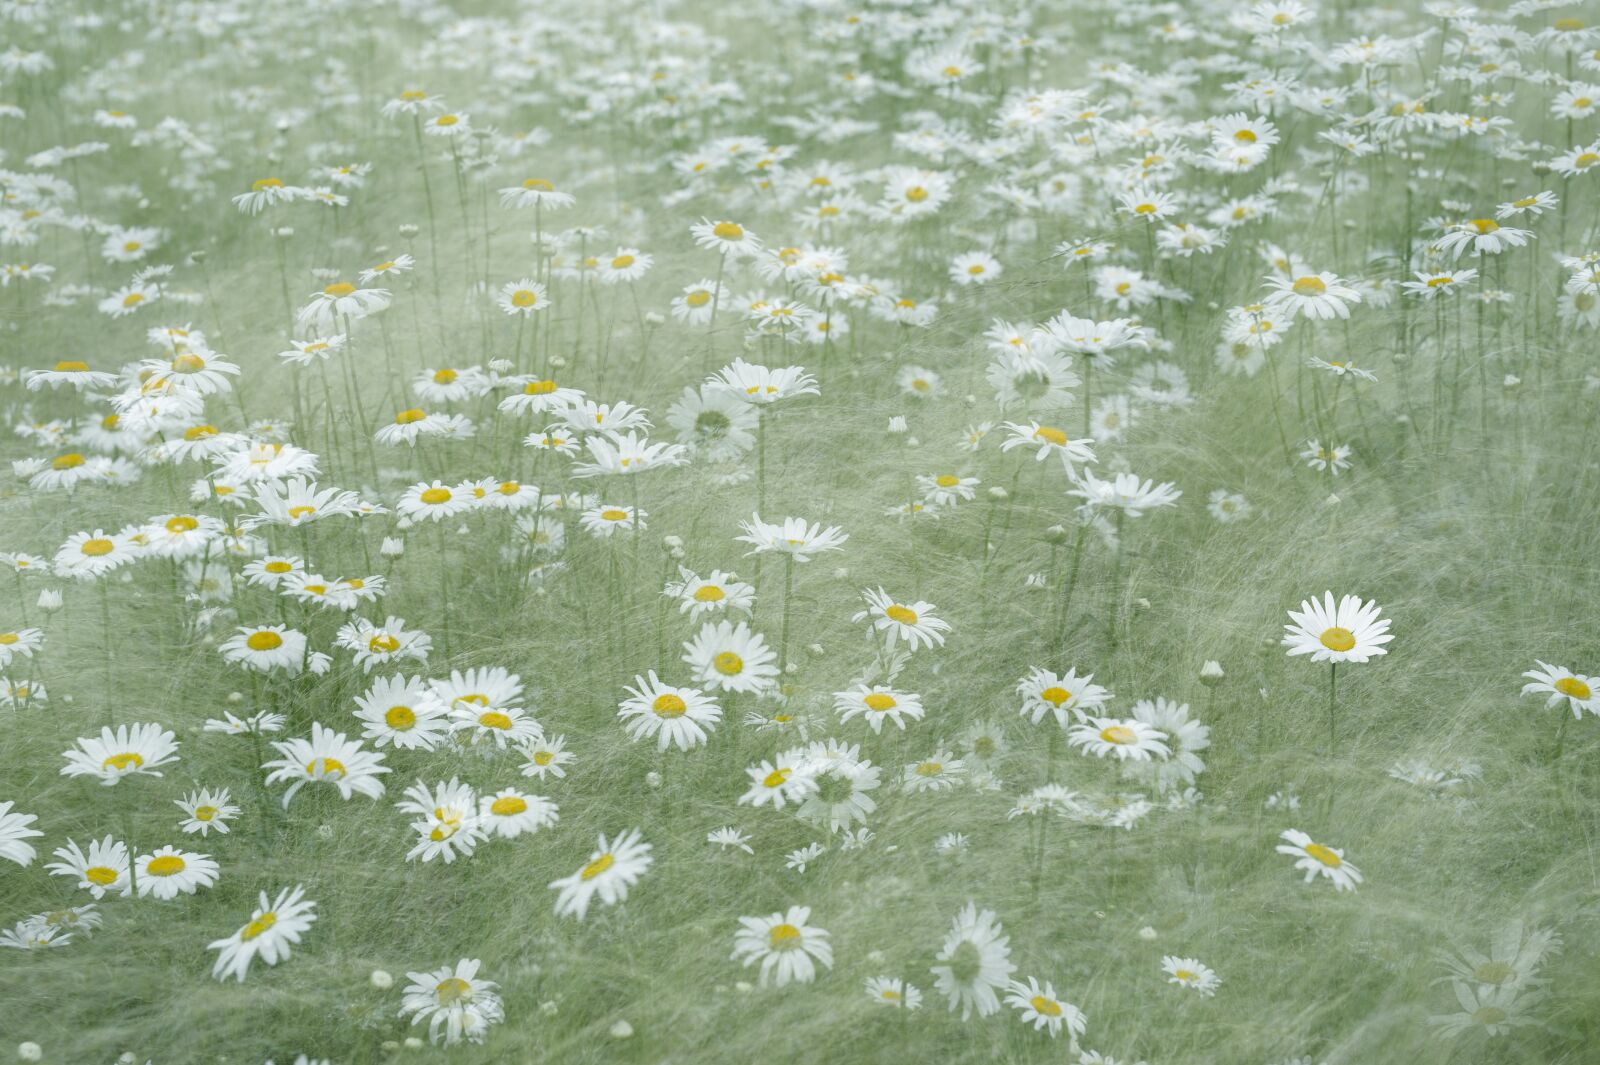 Nikon D700 sample photo. Shasta daisy, daisy, blooming photography